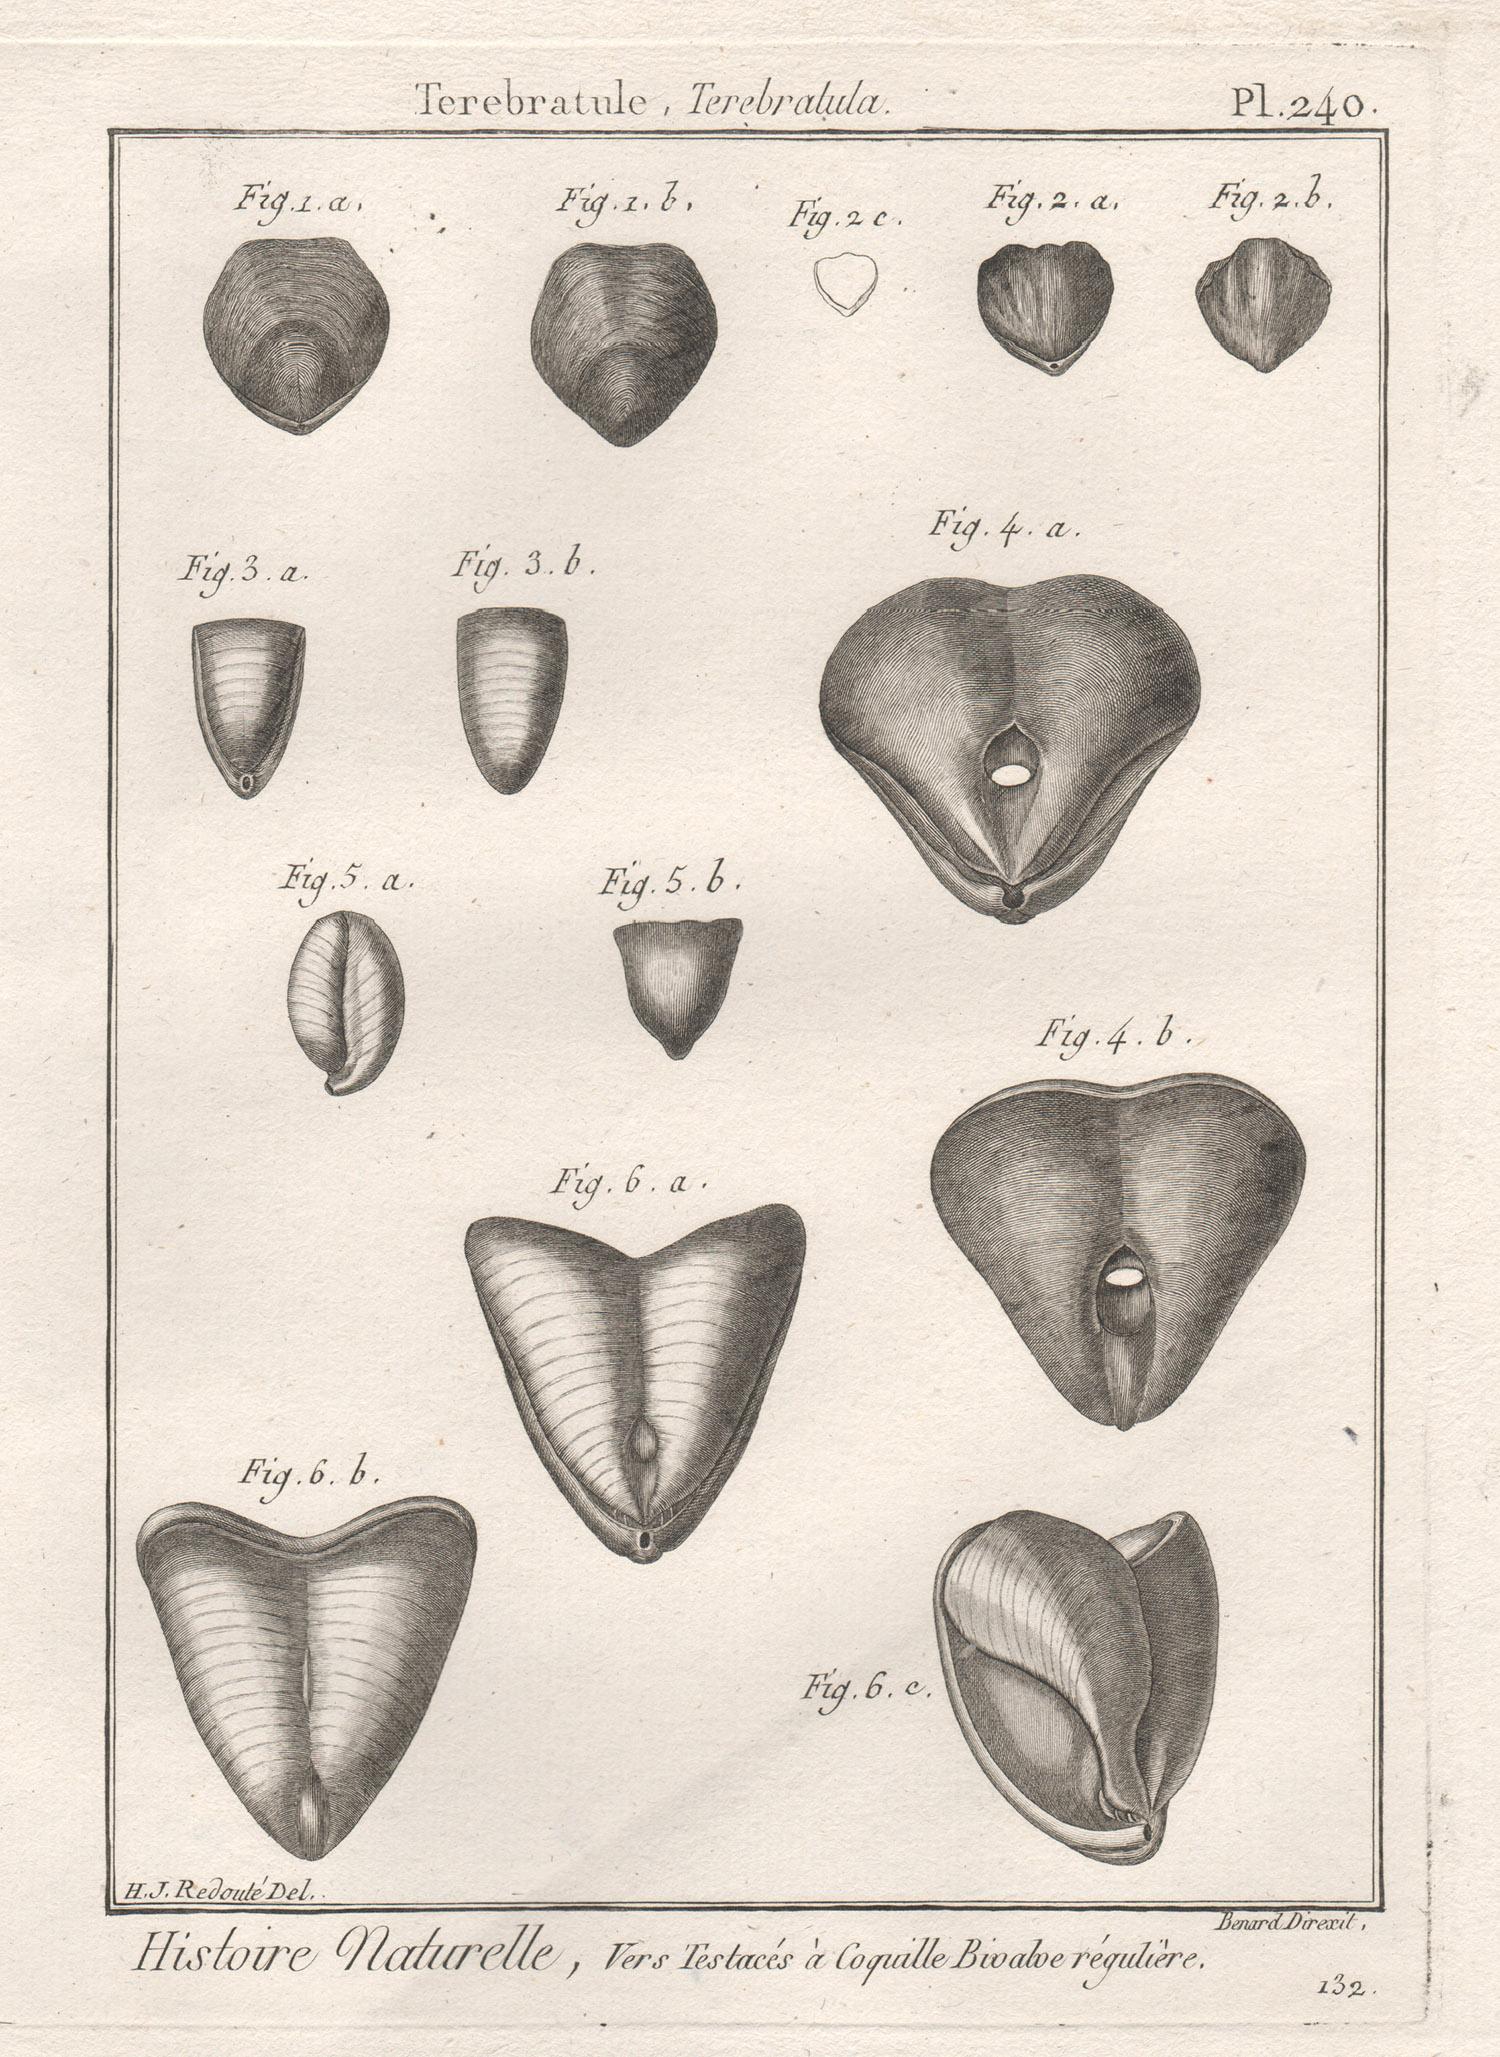 Coquillages, gravure française d'histoire naturelle des mers du 18e siècle représentant des coquillages 